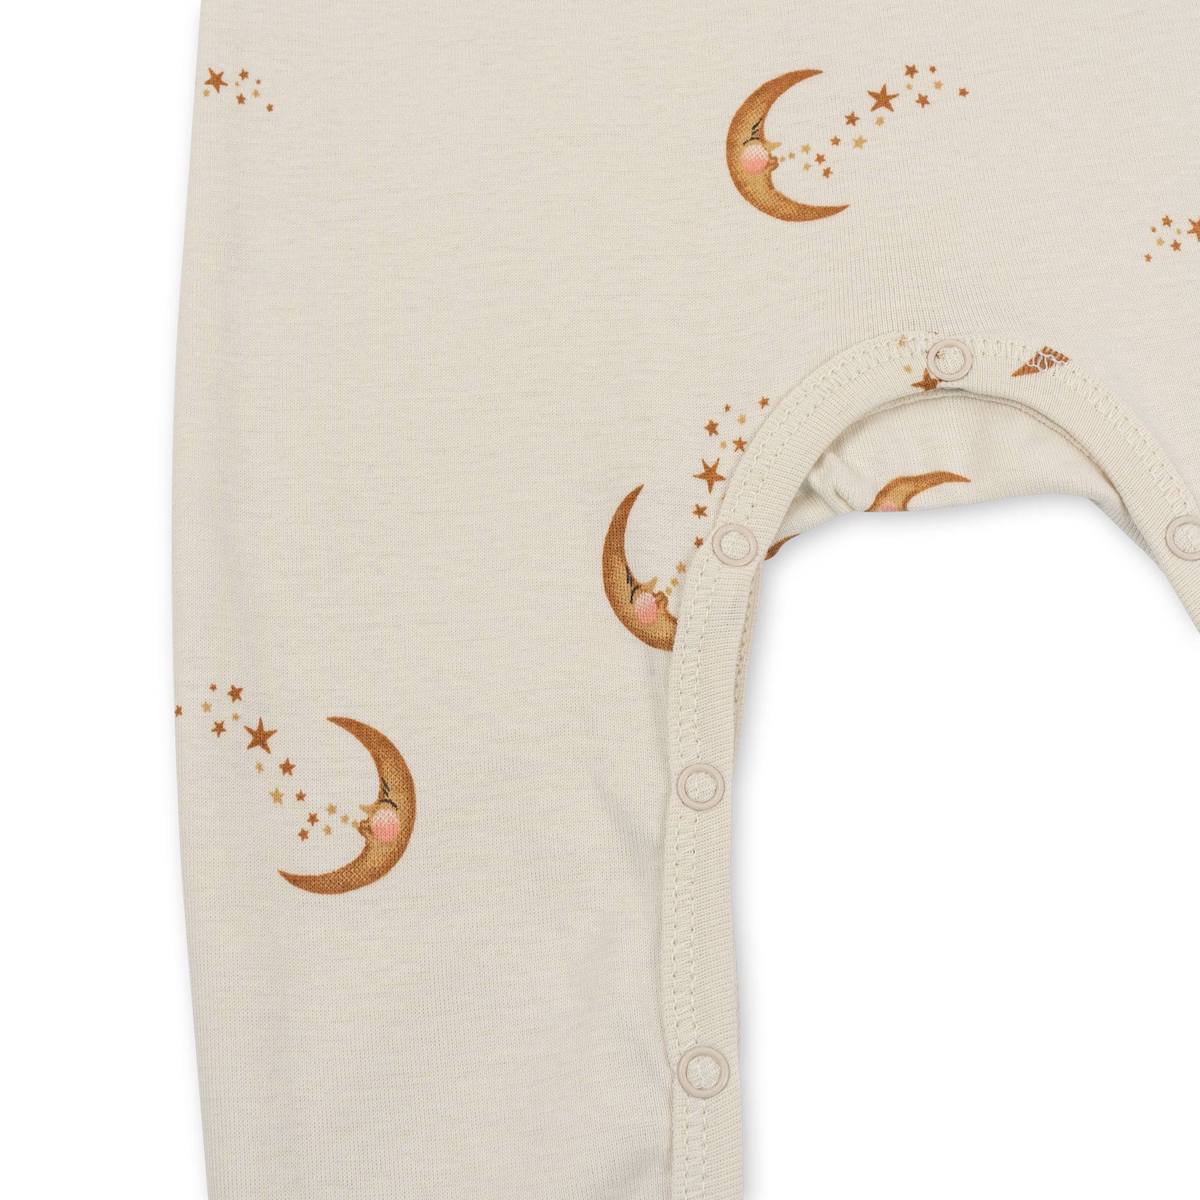 De Konges Slojd classic onesie moon is een fijn boxpakje voor je kindje. De baby onesie heeft een leuke print met maantjes en is gemaakt van 100% biologisch katoen. VanZus.